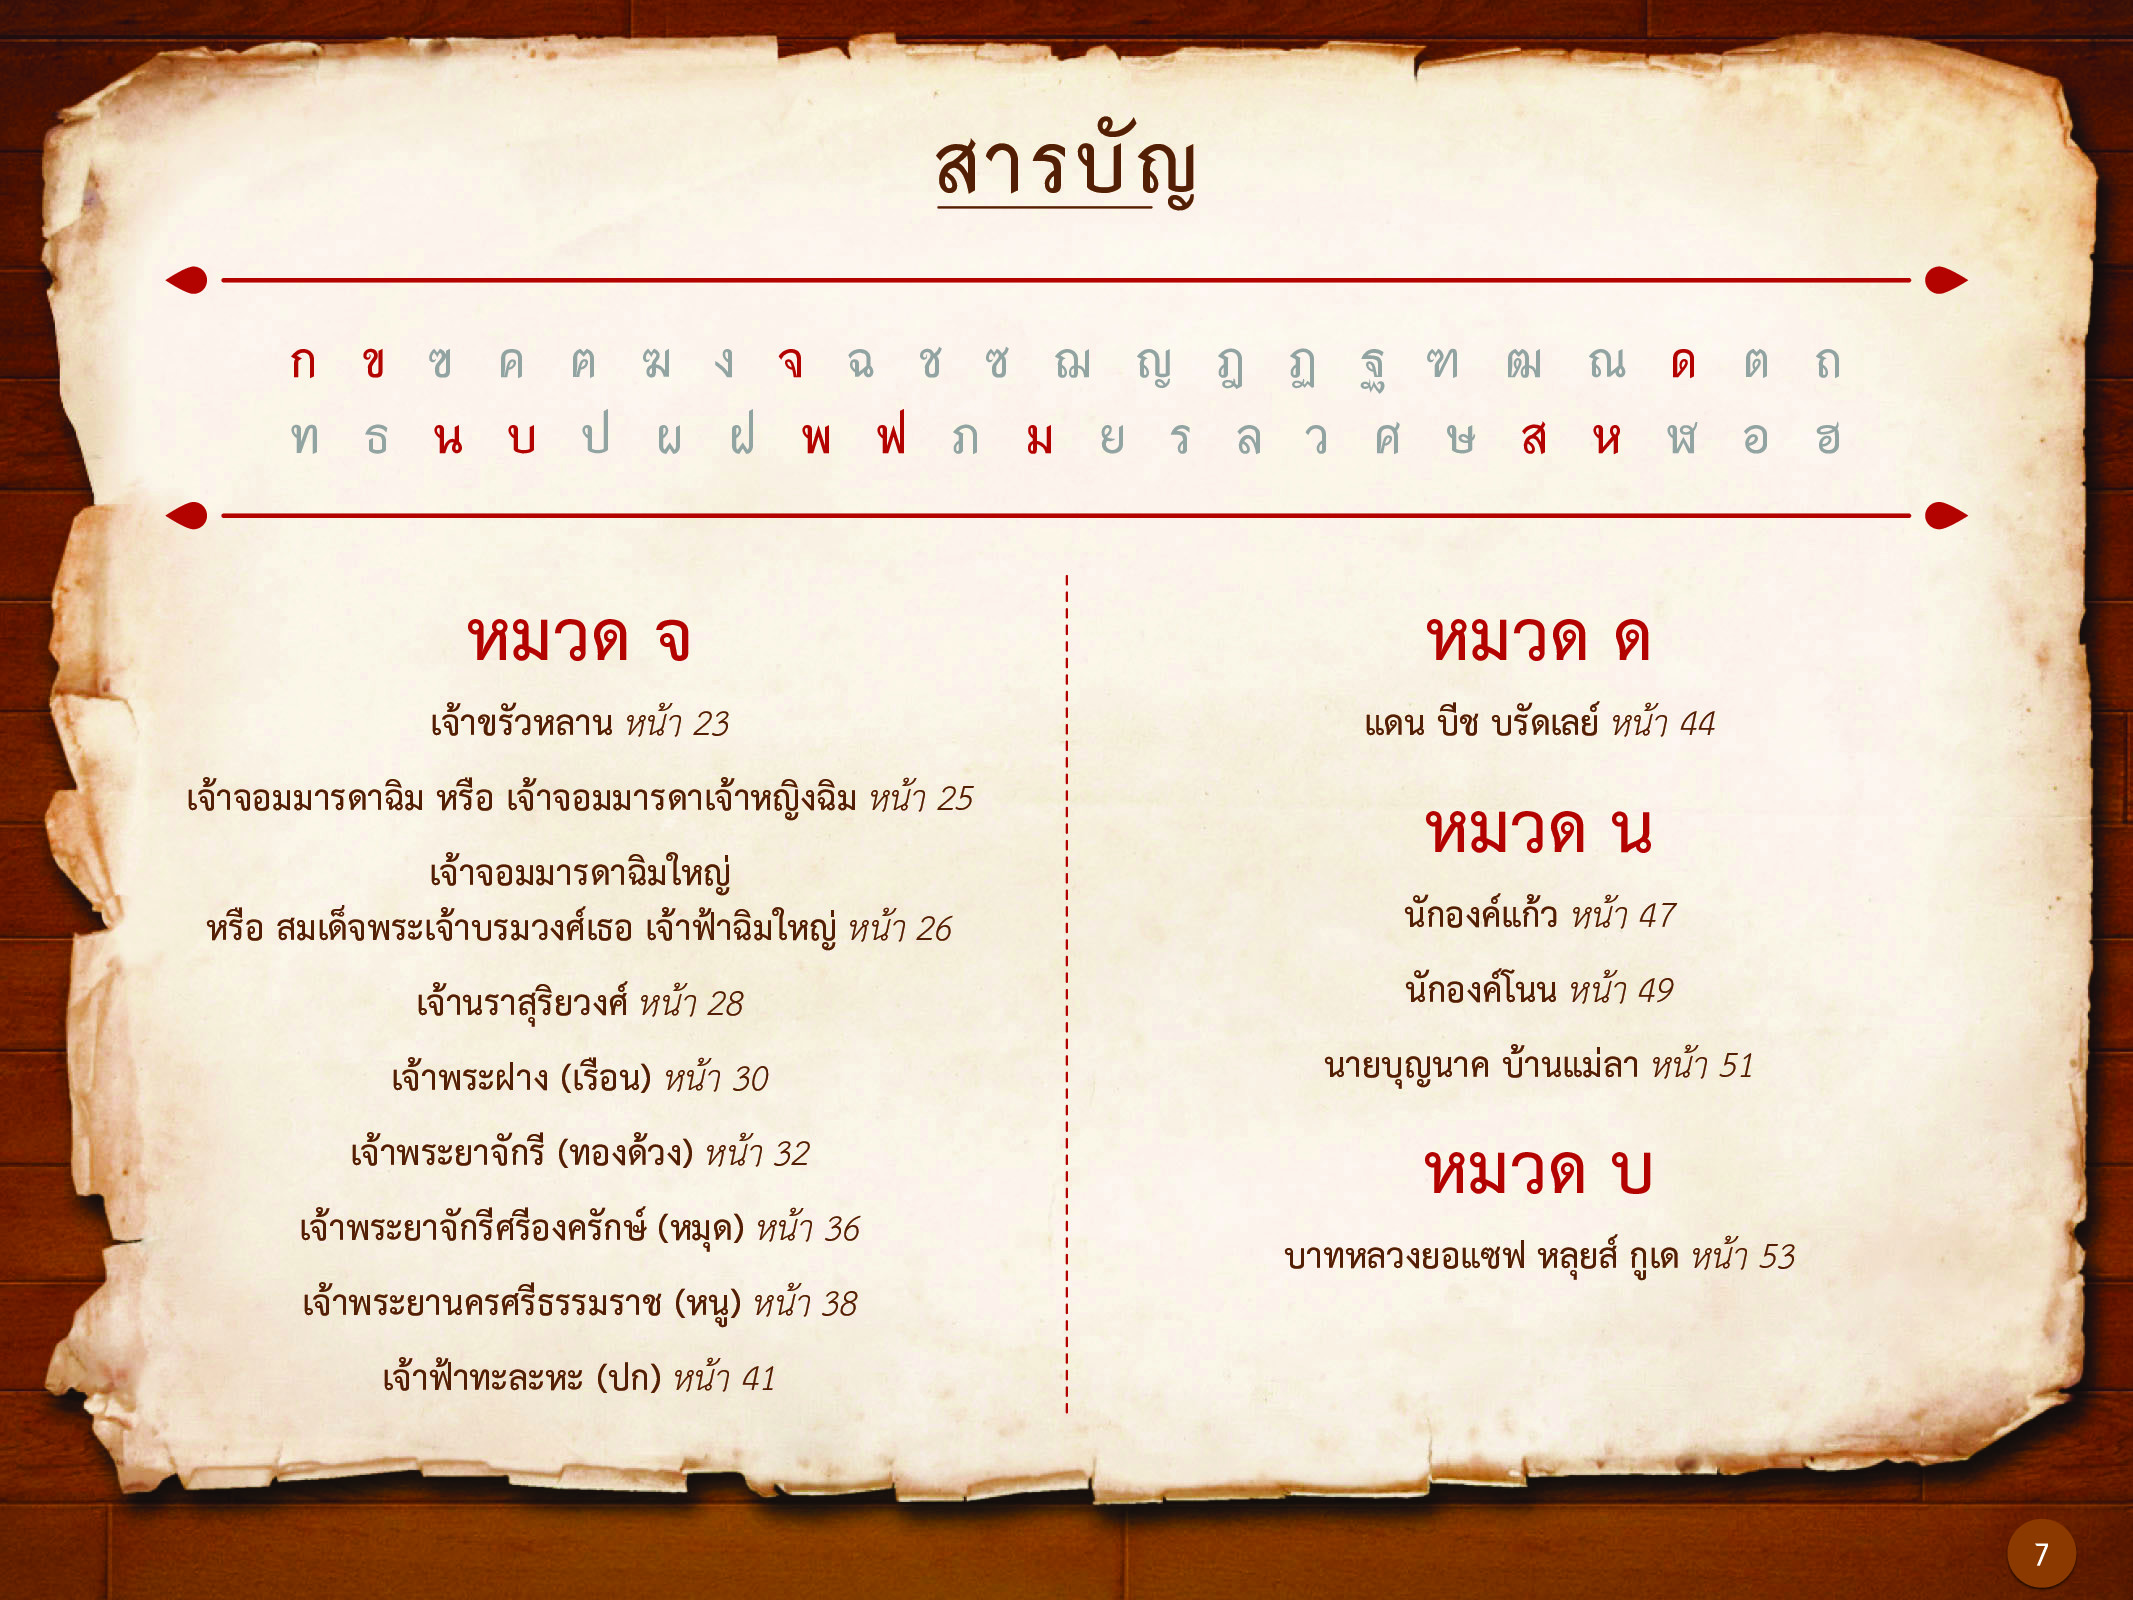 ประวัติศาสตร์กรุงธนบุรี ./images/history_dhonburi/7.jpg